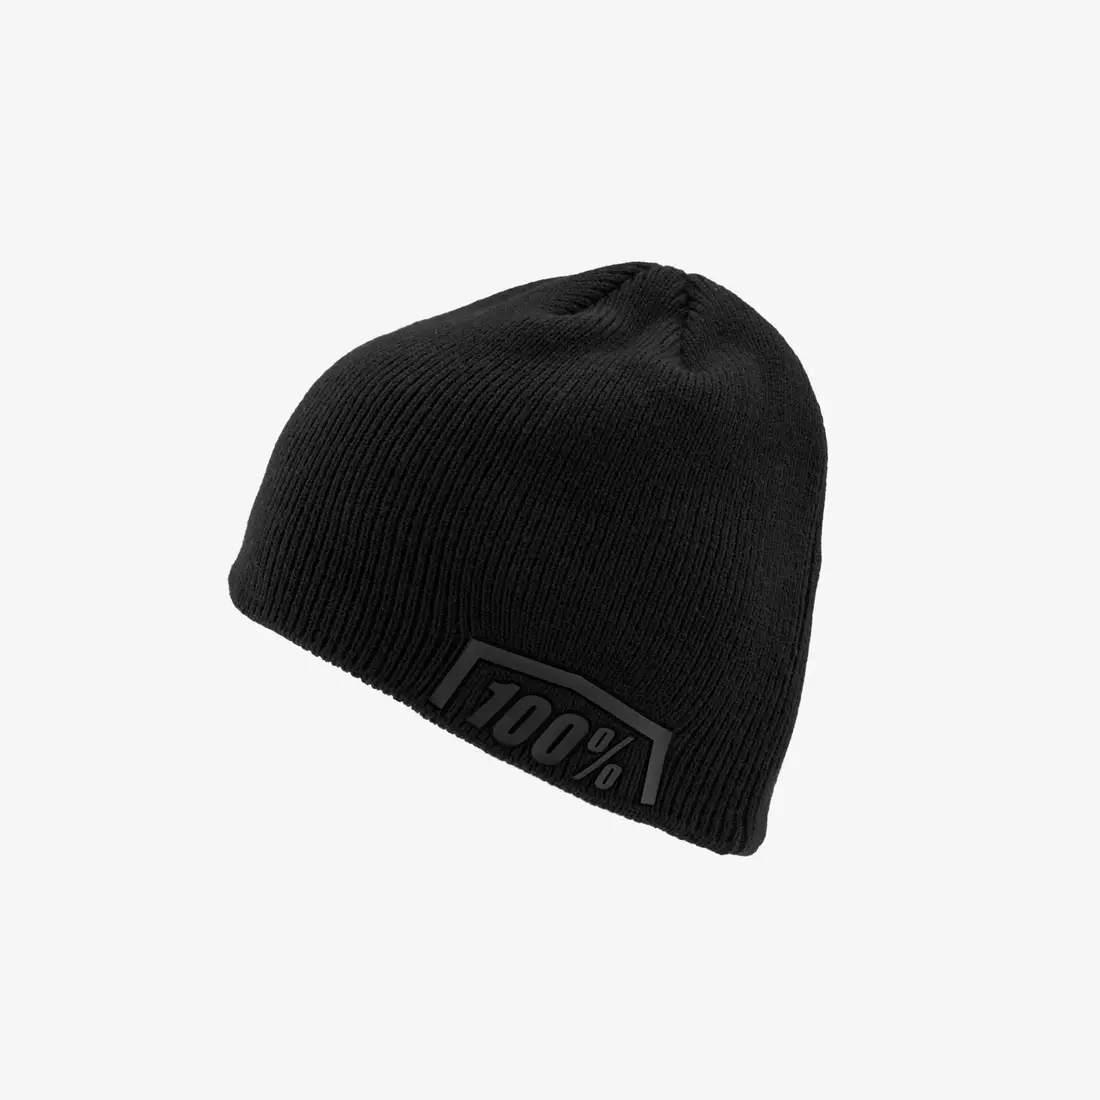 100% autumn / winter hat ESSENTIAL Beanie black STO-20116-426-01